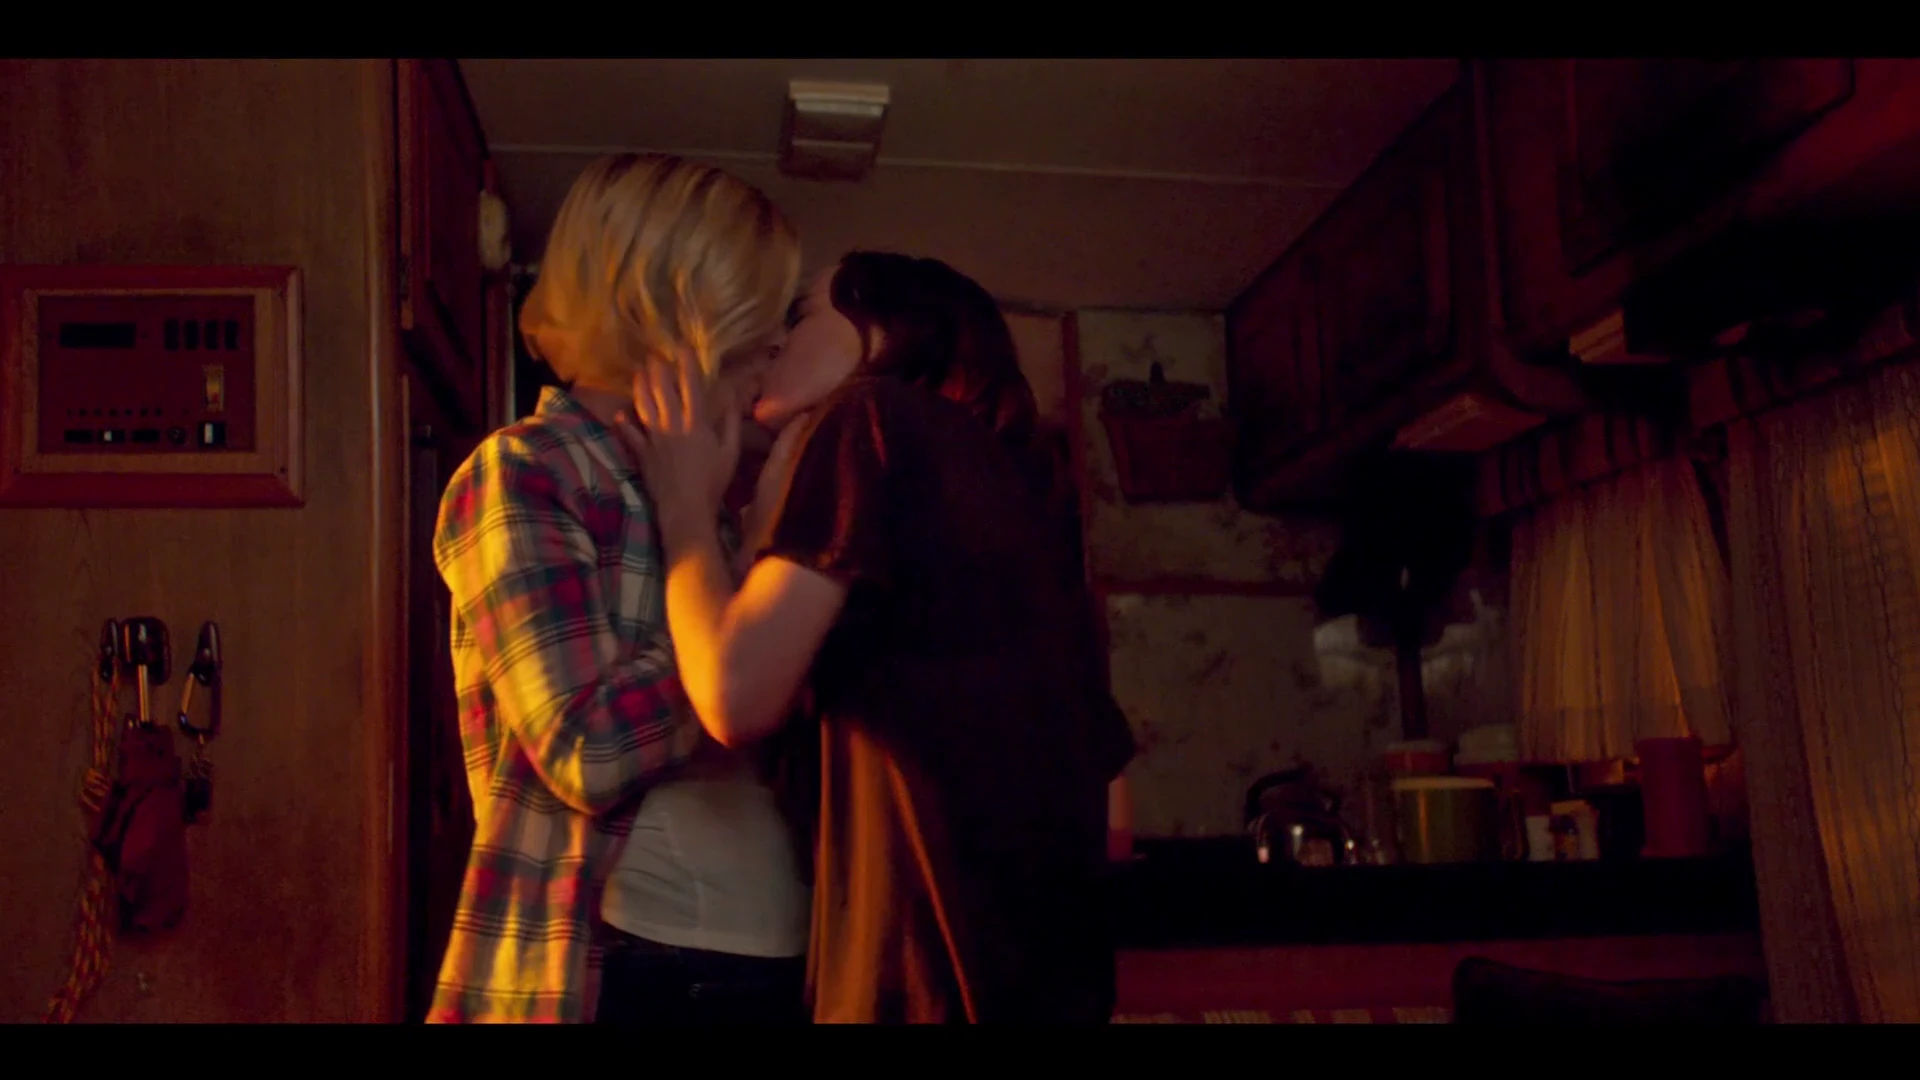 Delicious kiss between lesbians